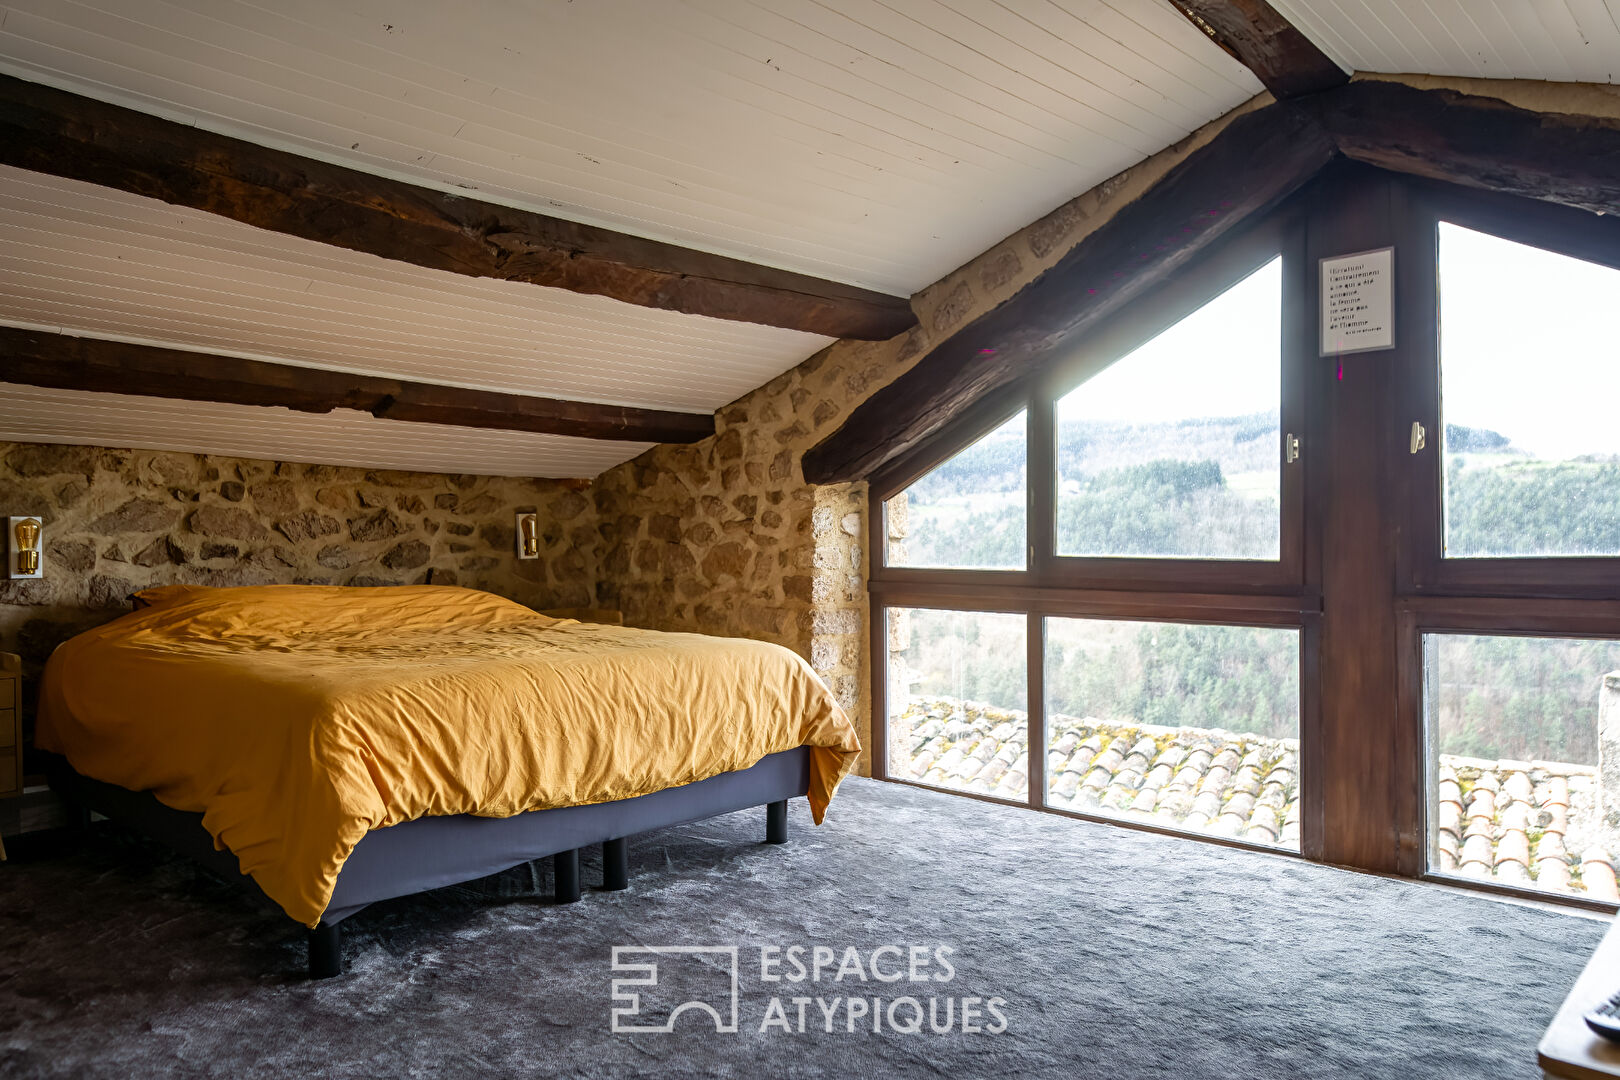 Une touche d’originalité se frotte à la rusticité d’une maison de campagne en Ardèche Verte